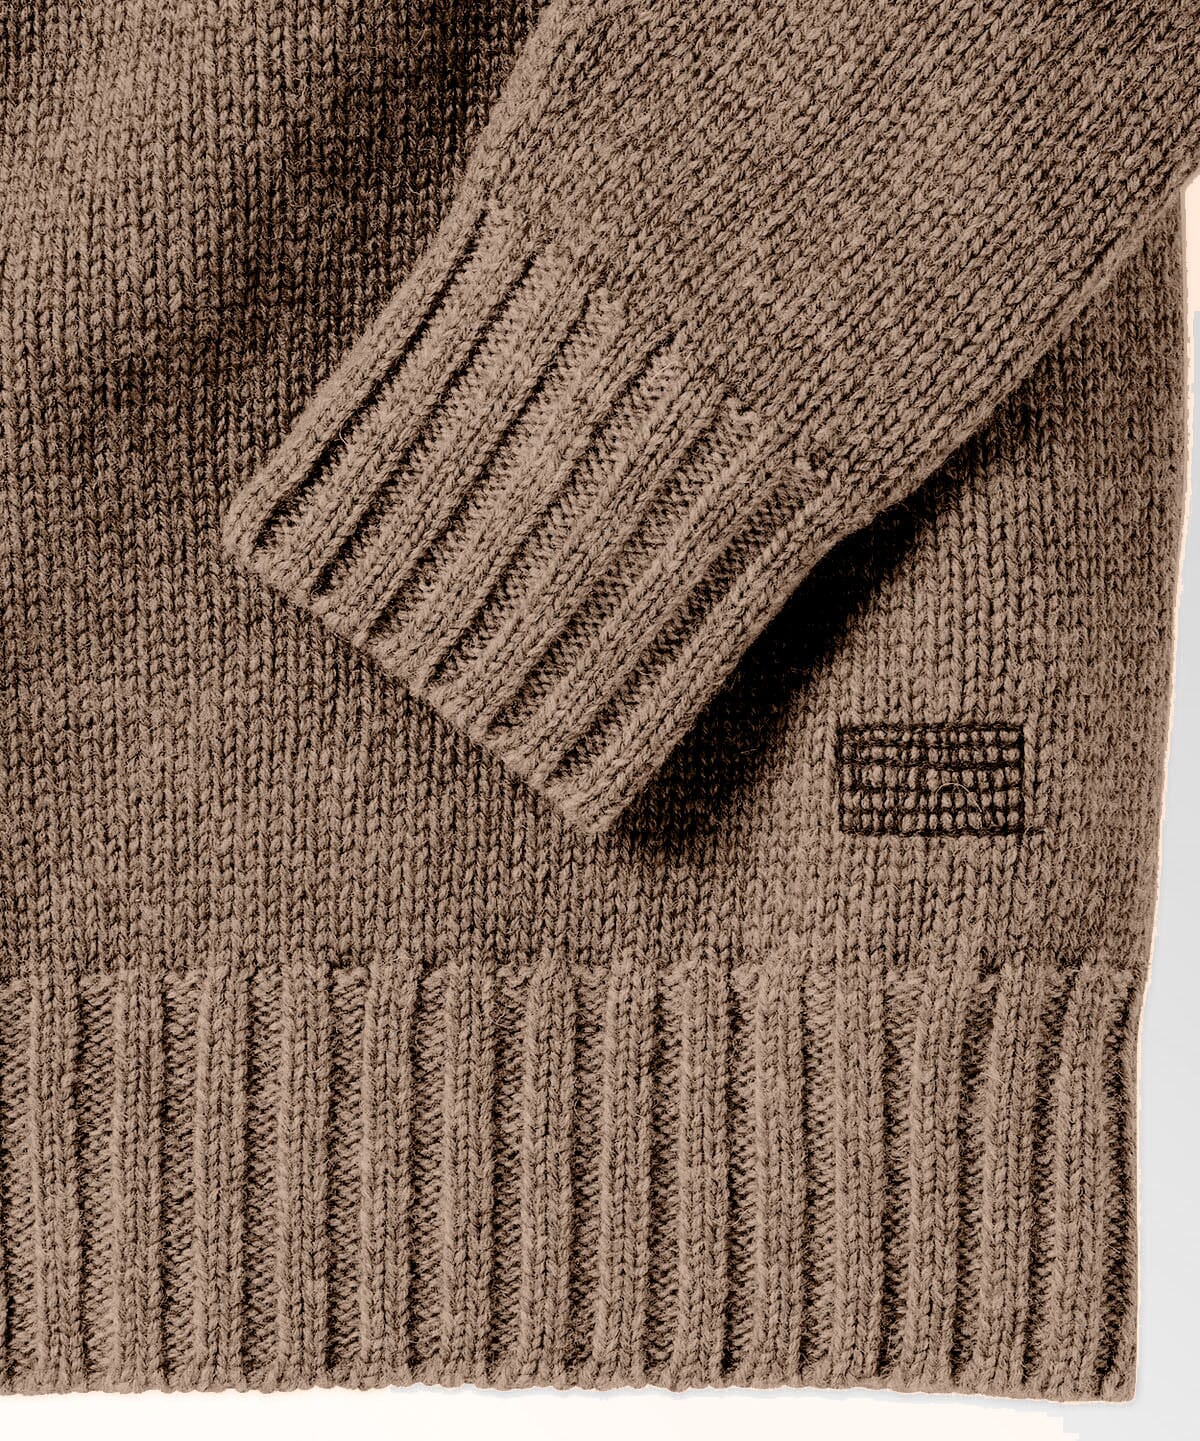 Edisto Crew Wool Sweater